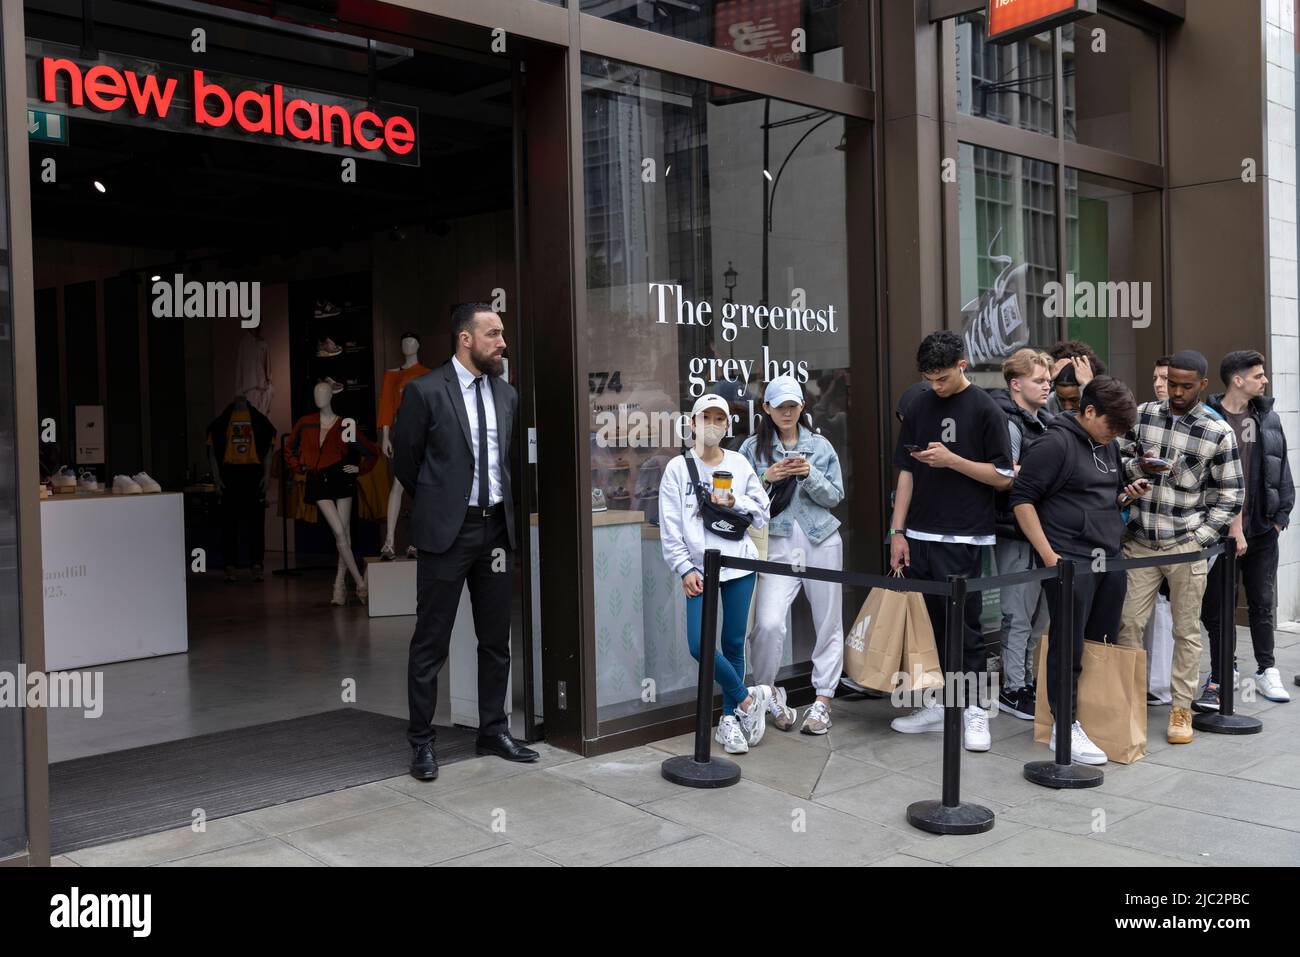 Les jeunes acheteurs font la queue devant le magasin de vêtements et de chaussures New Balance à Oxford Street, Londres, Royaume-Uni Banque D'Images